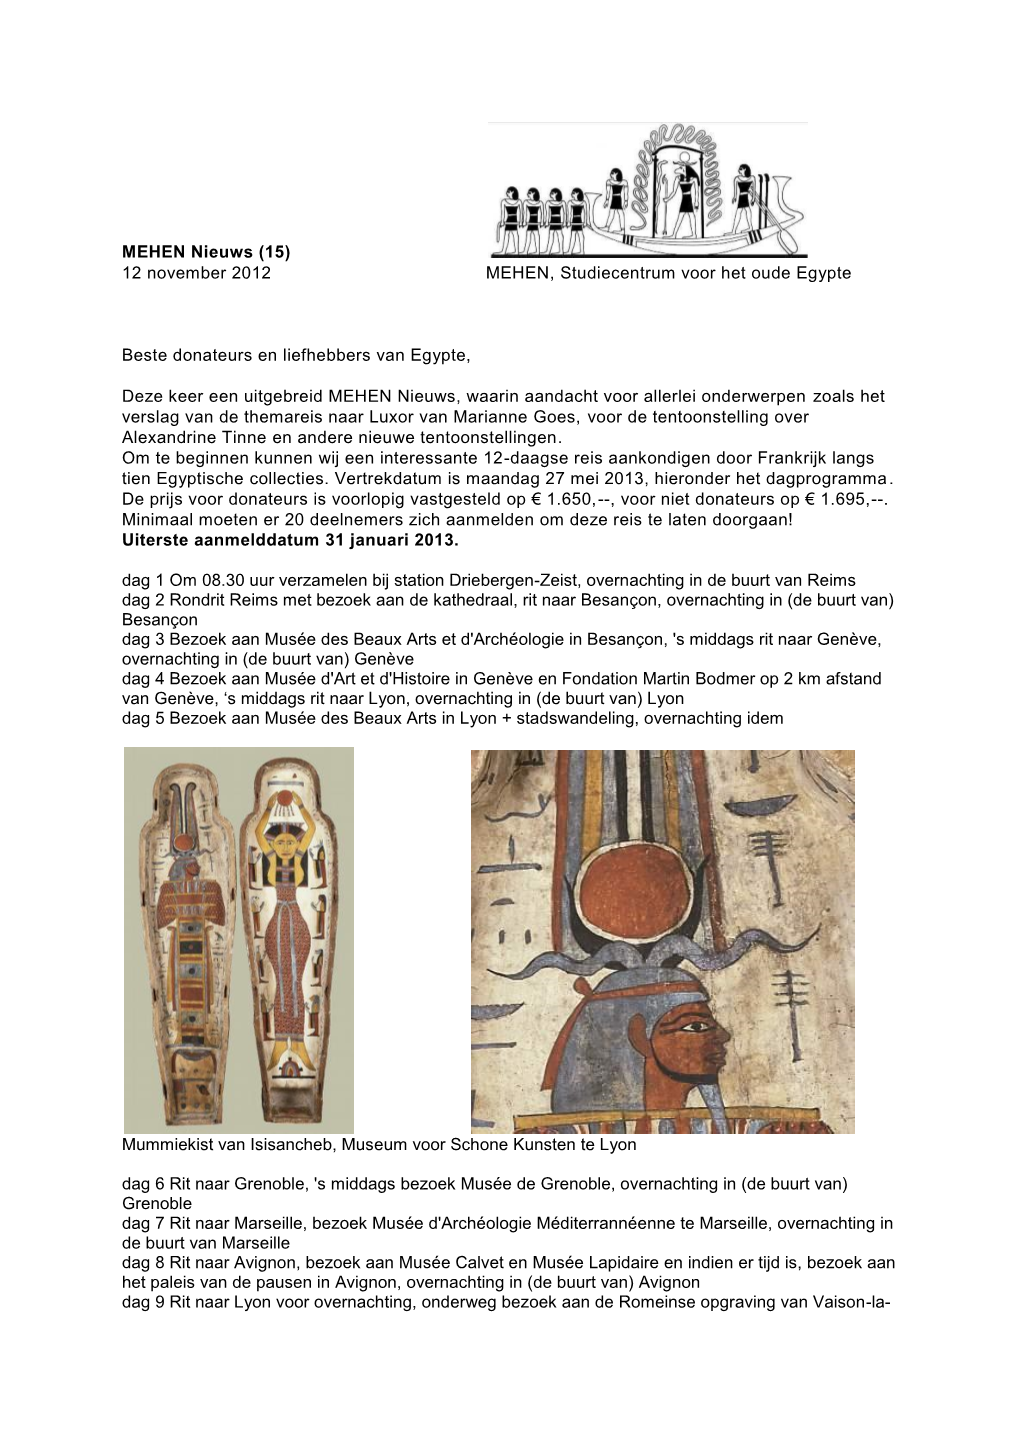 MEHEN Nieuws (15) 12 November 2012 MEHEN, Studiecentrum Voor Het Oude Egypte